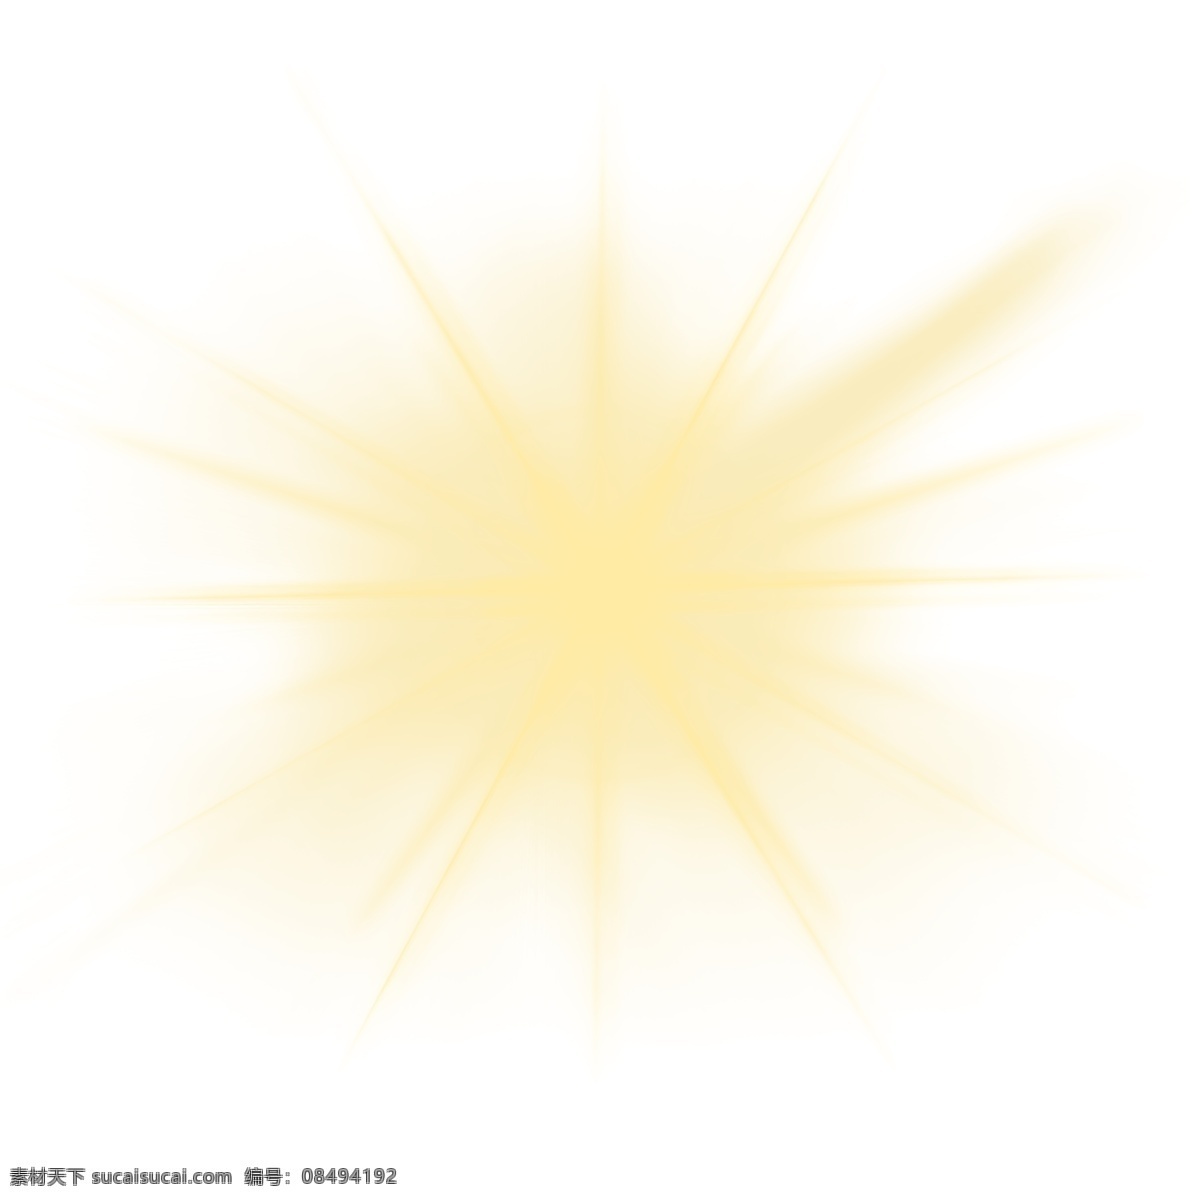 放射 黄色 光束 光晕 分层 光效 元素 黄色光效 线型光 光影 光斑 光点 光线 动感 抽丝 抽象 炫光 炫幻 炫酷